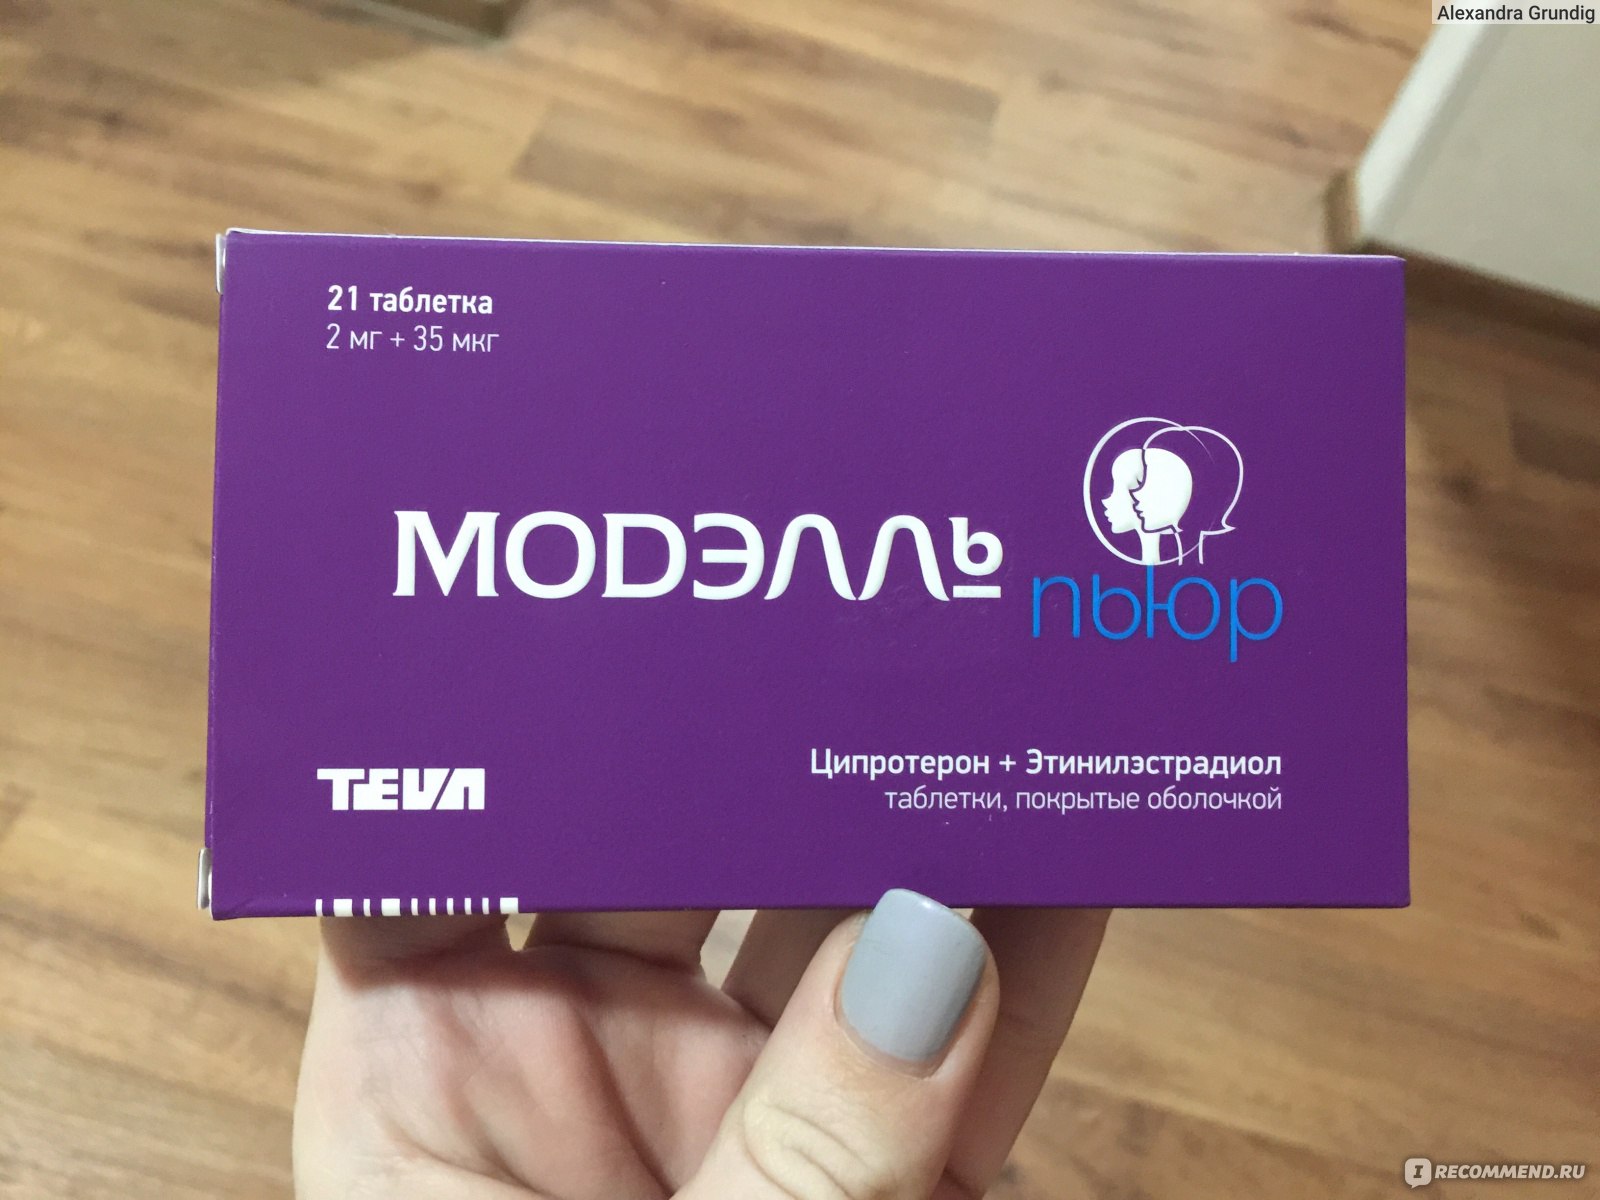 Контрацептивы TeVa Модэлль пьюр - «Загробленное здоровье от «Модэлль .